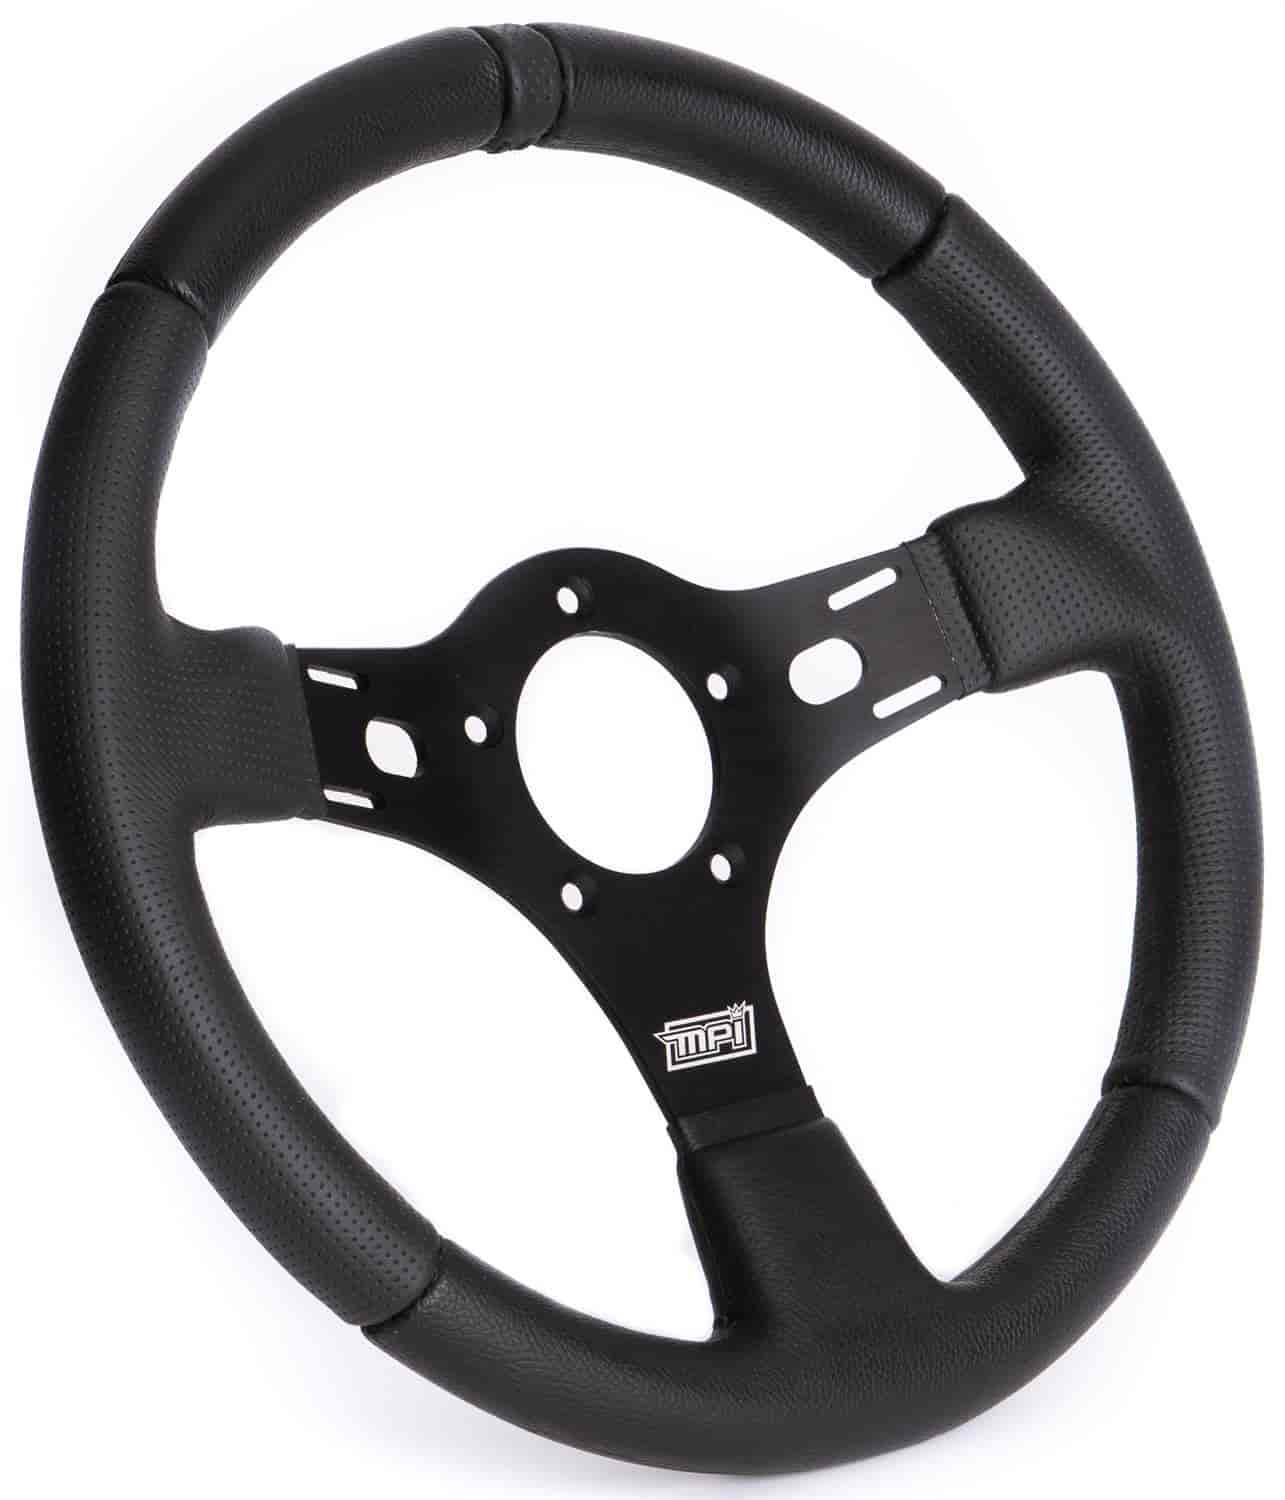 Drag Race Steering Wheel 13 in. Diameter, Black